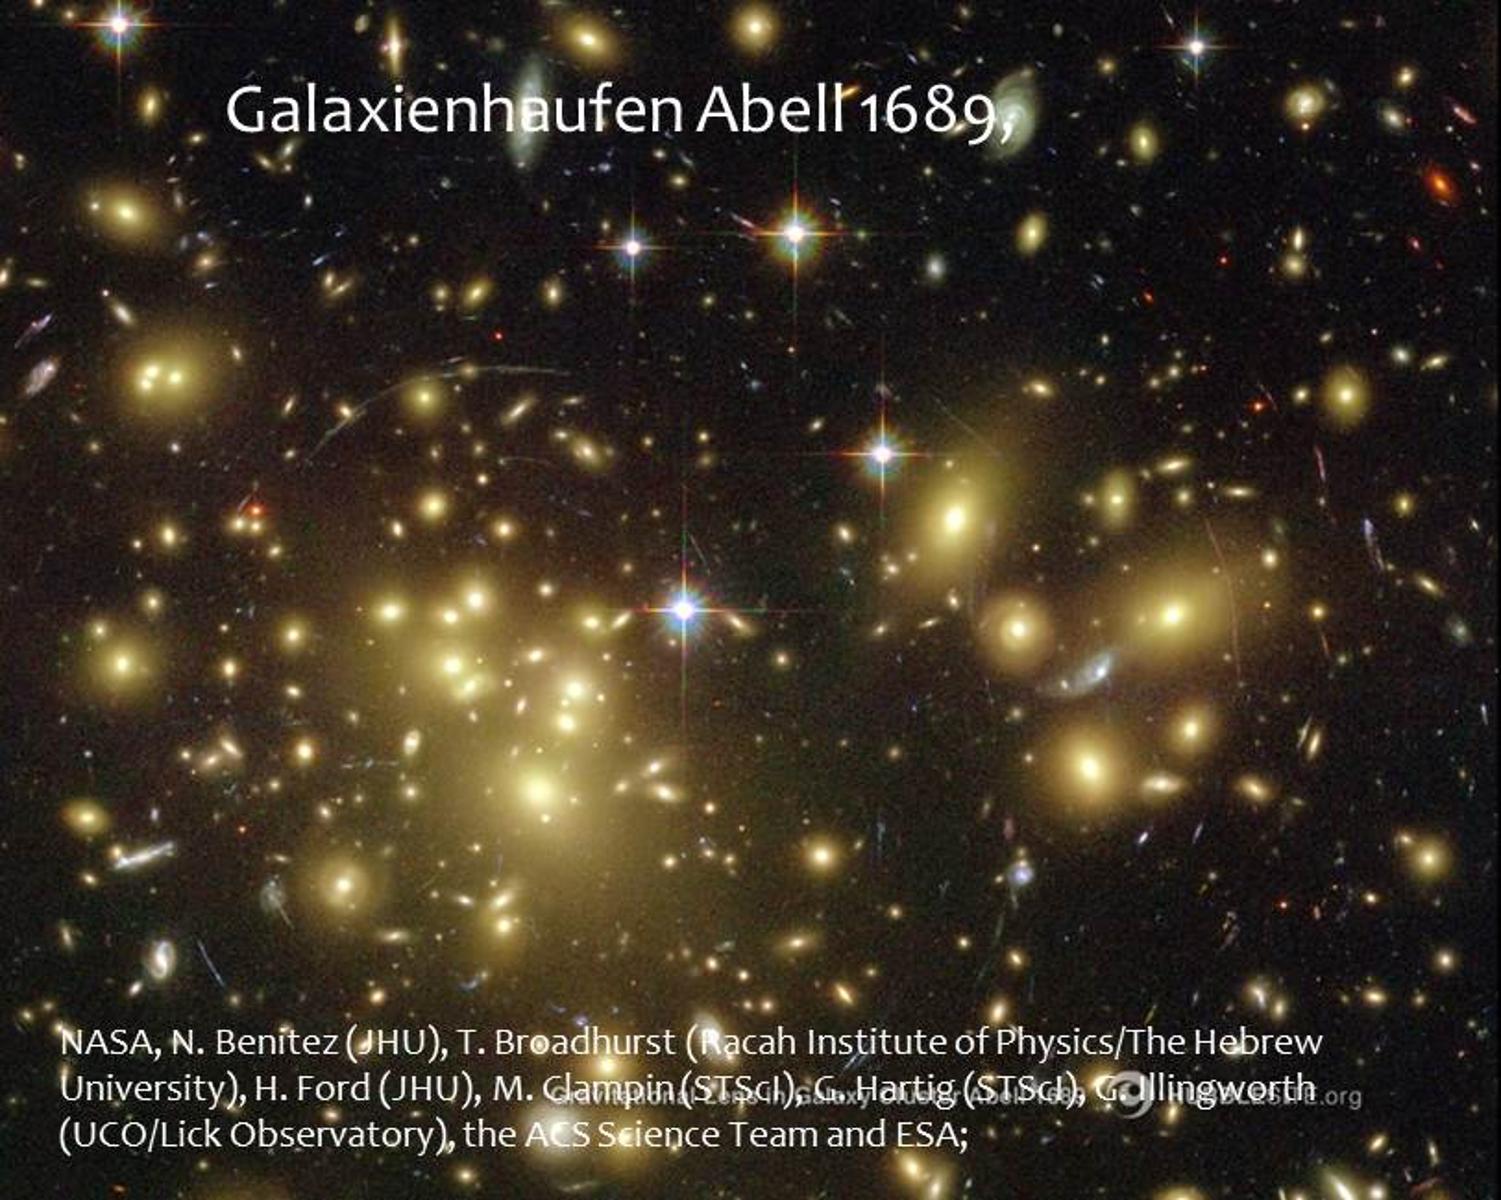 Galaxienhaufen Abell 1689